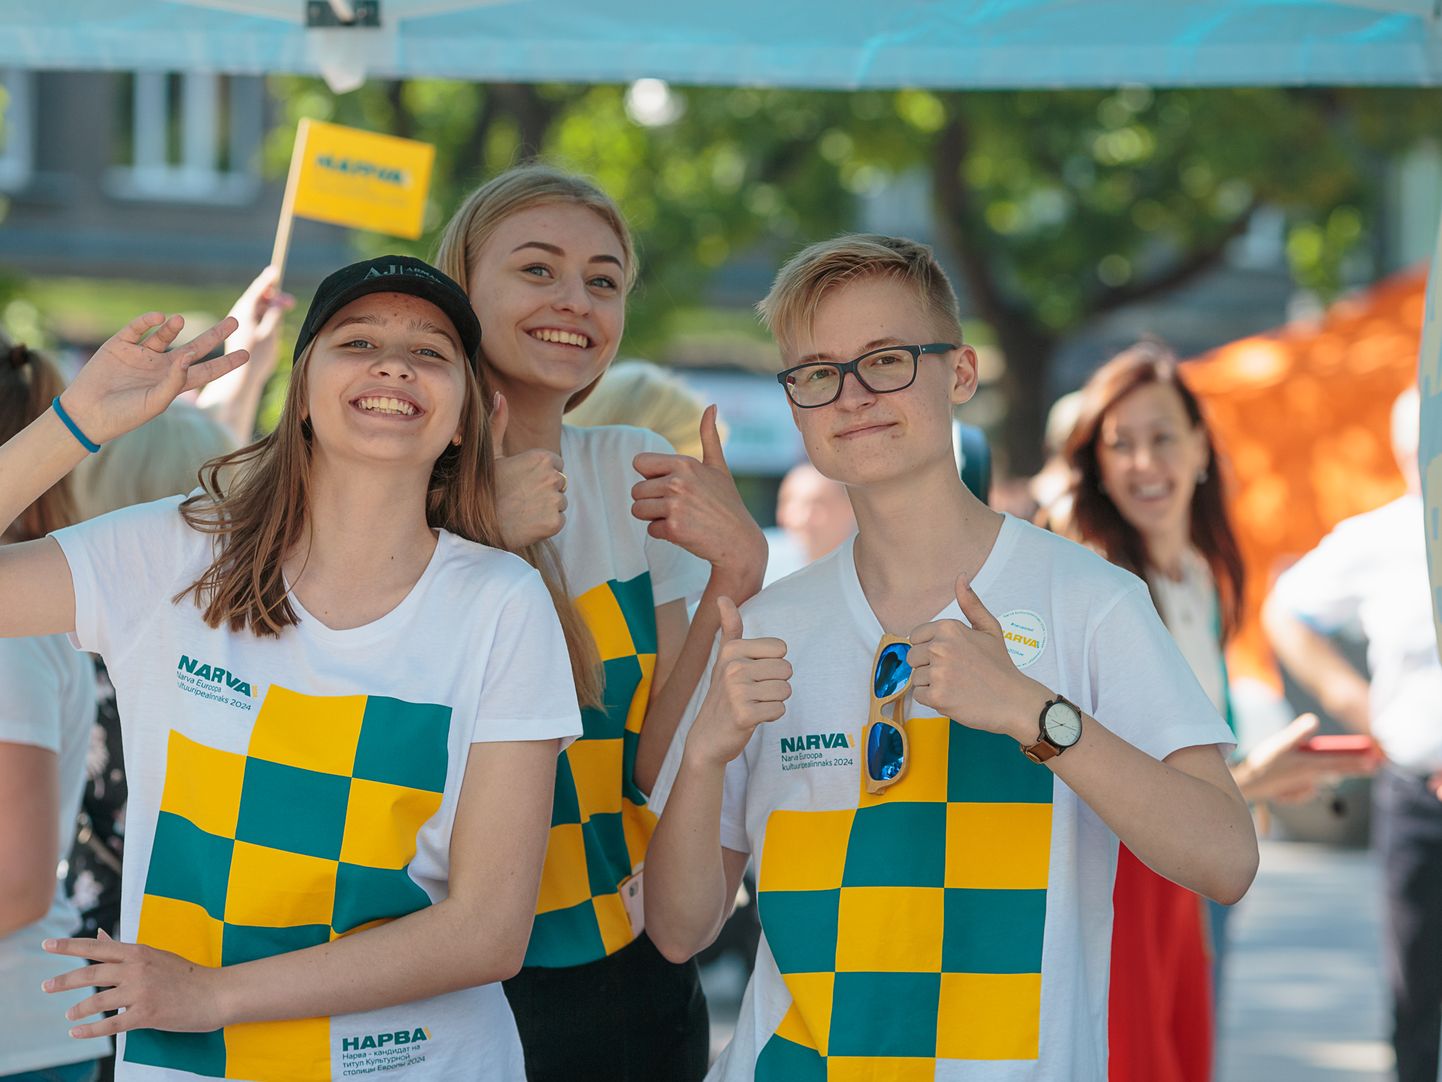 Enamik noortest on aktiivsed ja ühiskonnale rõõmuks. Omavalitsused püüavad jõuda selle vähemuseni, kes ei õpi ega tööta. Pilt on illustratiivne ja tehtud noortest vabatahtlikest, kes osalesid kampaanias "Narva 2024. aasta kultuuripealinnaks".